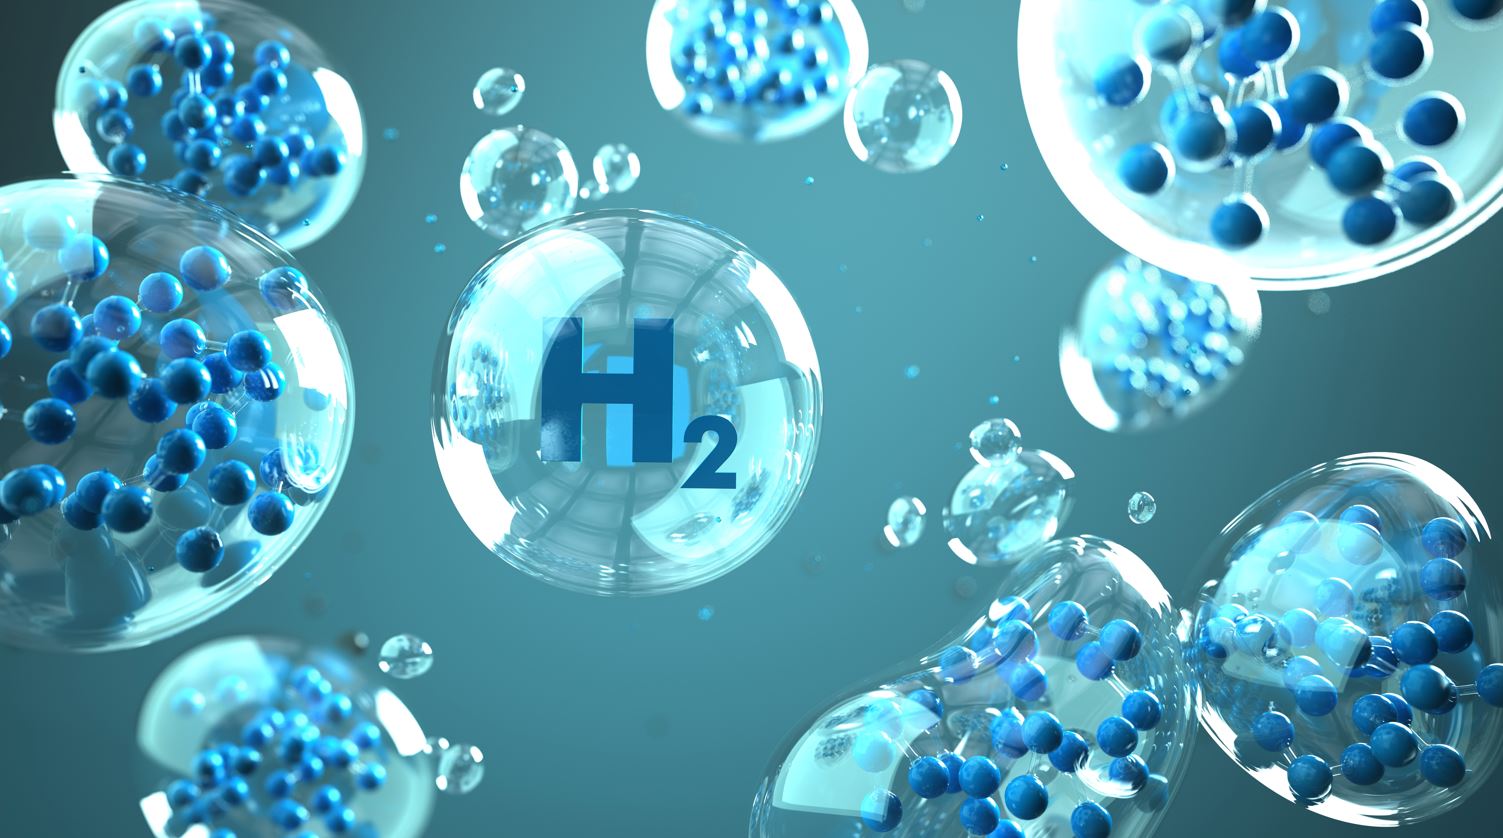 element hydrogen